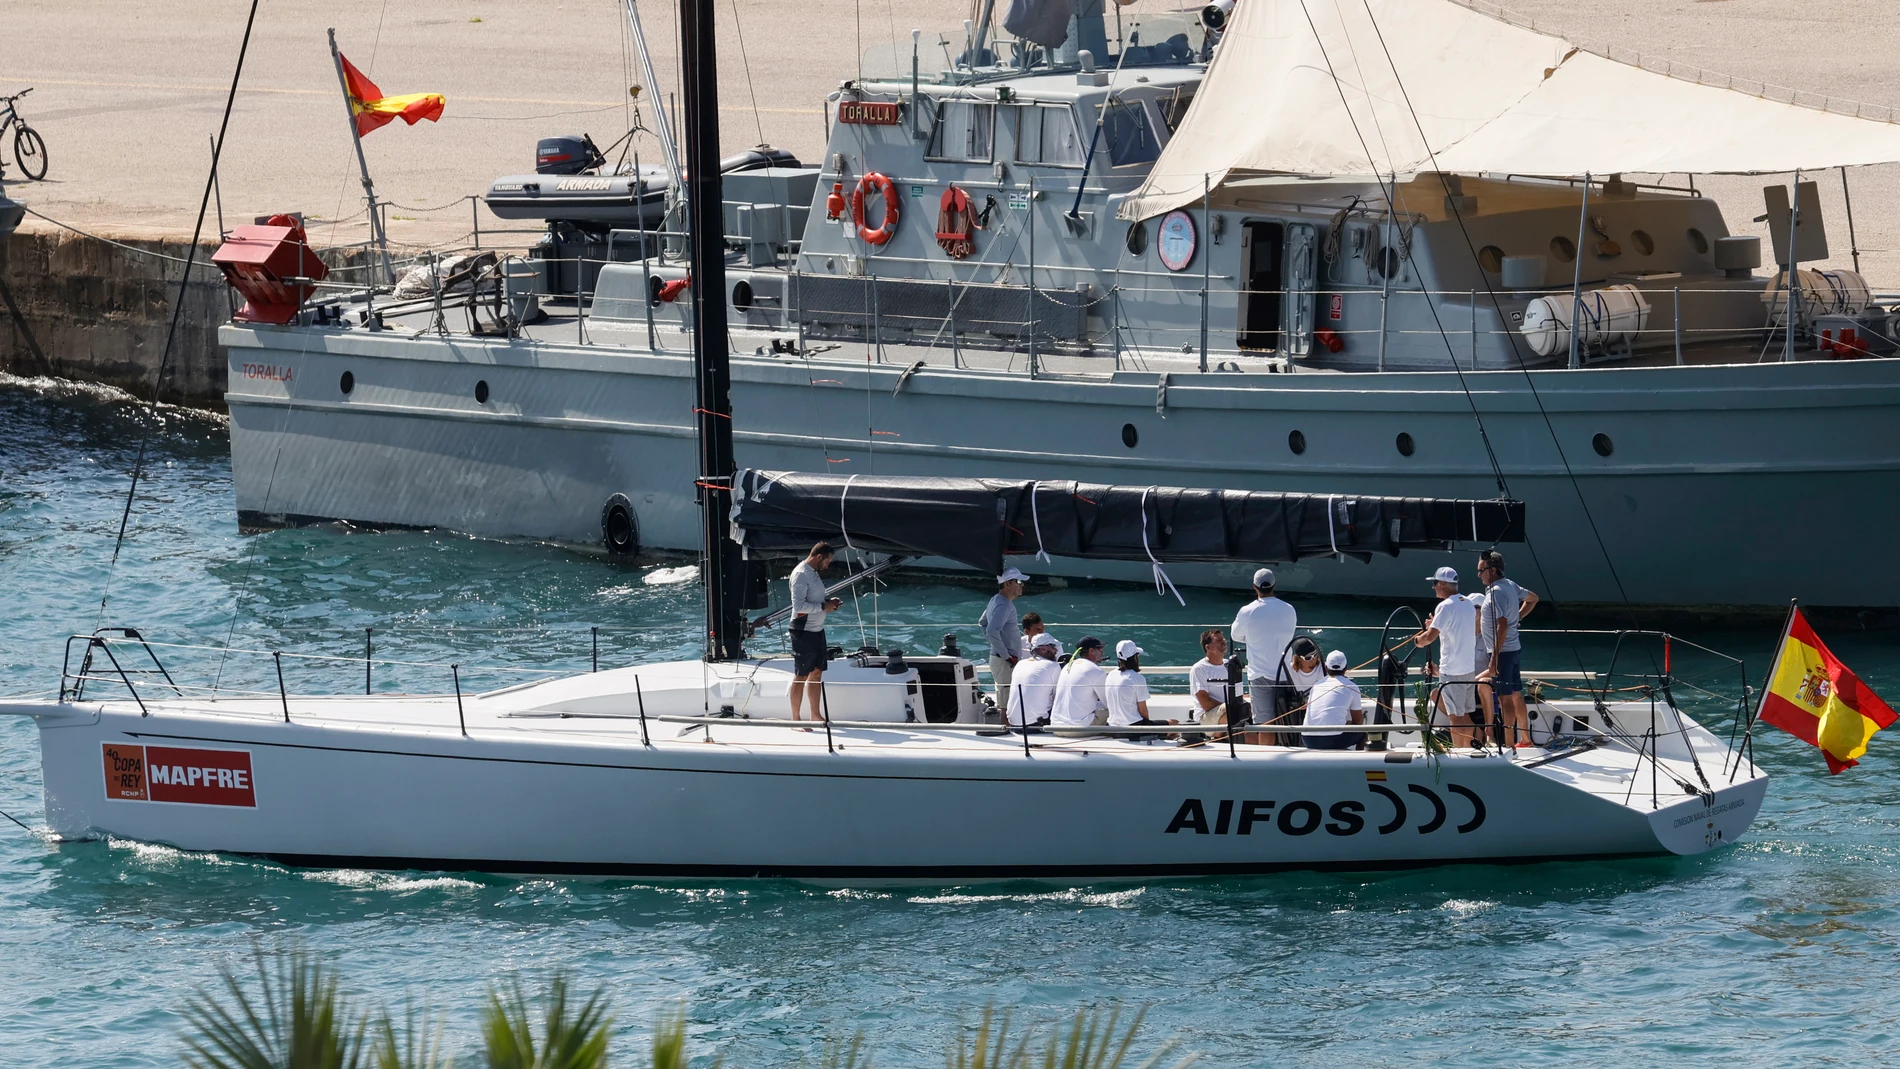 El velero Aifos sale de Porto Pí con el Felipe VI a bordo